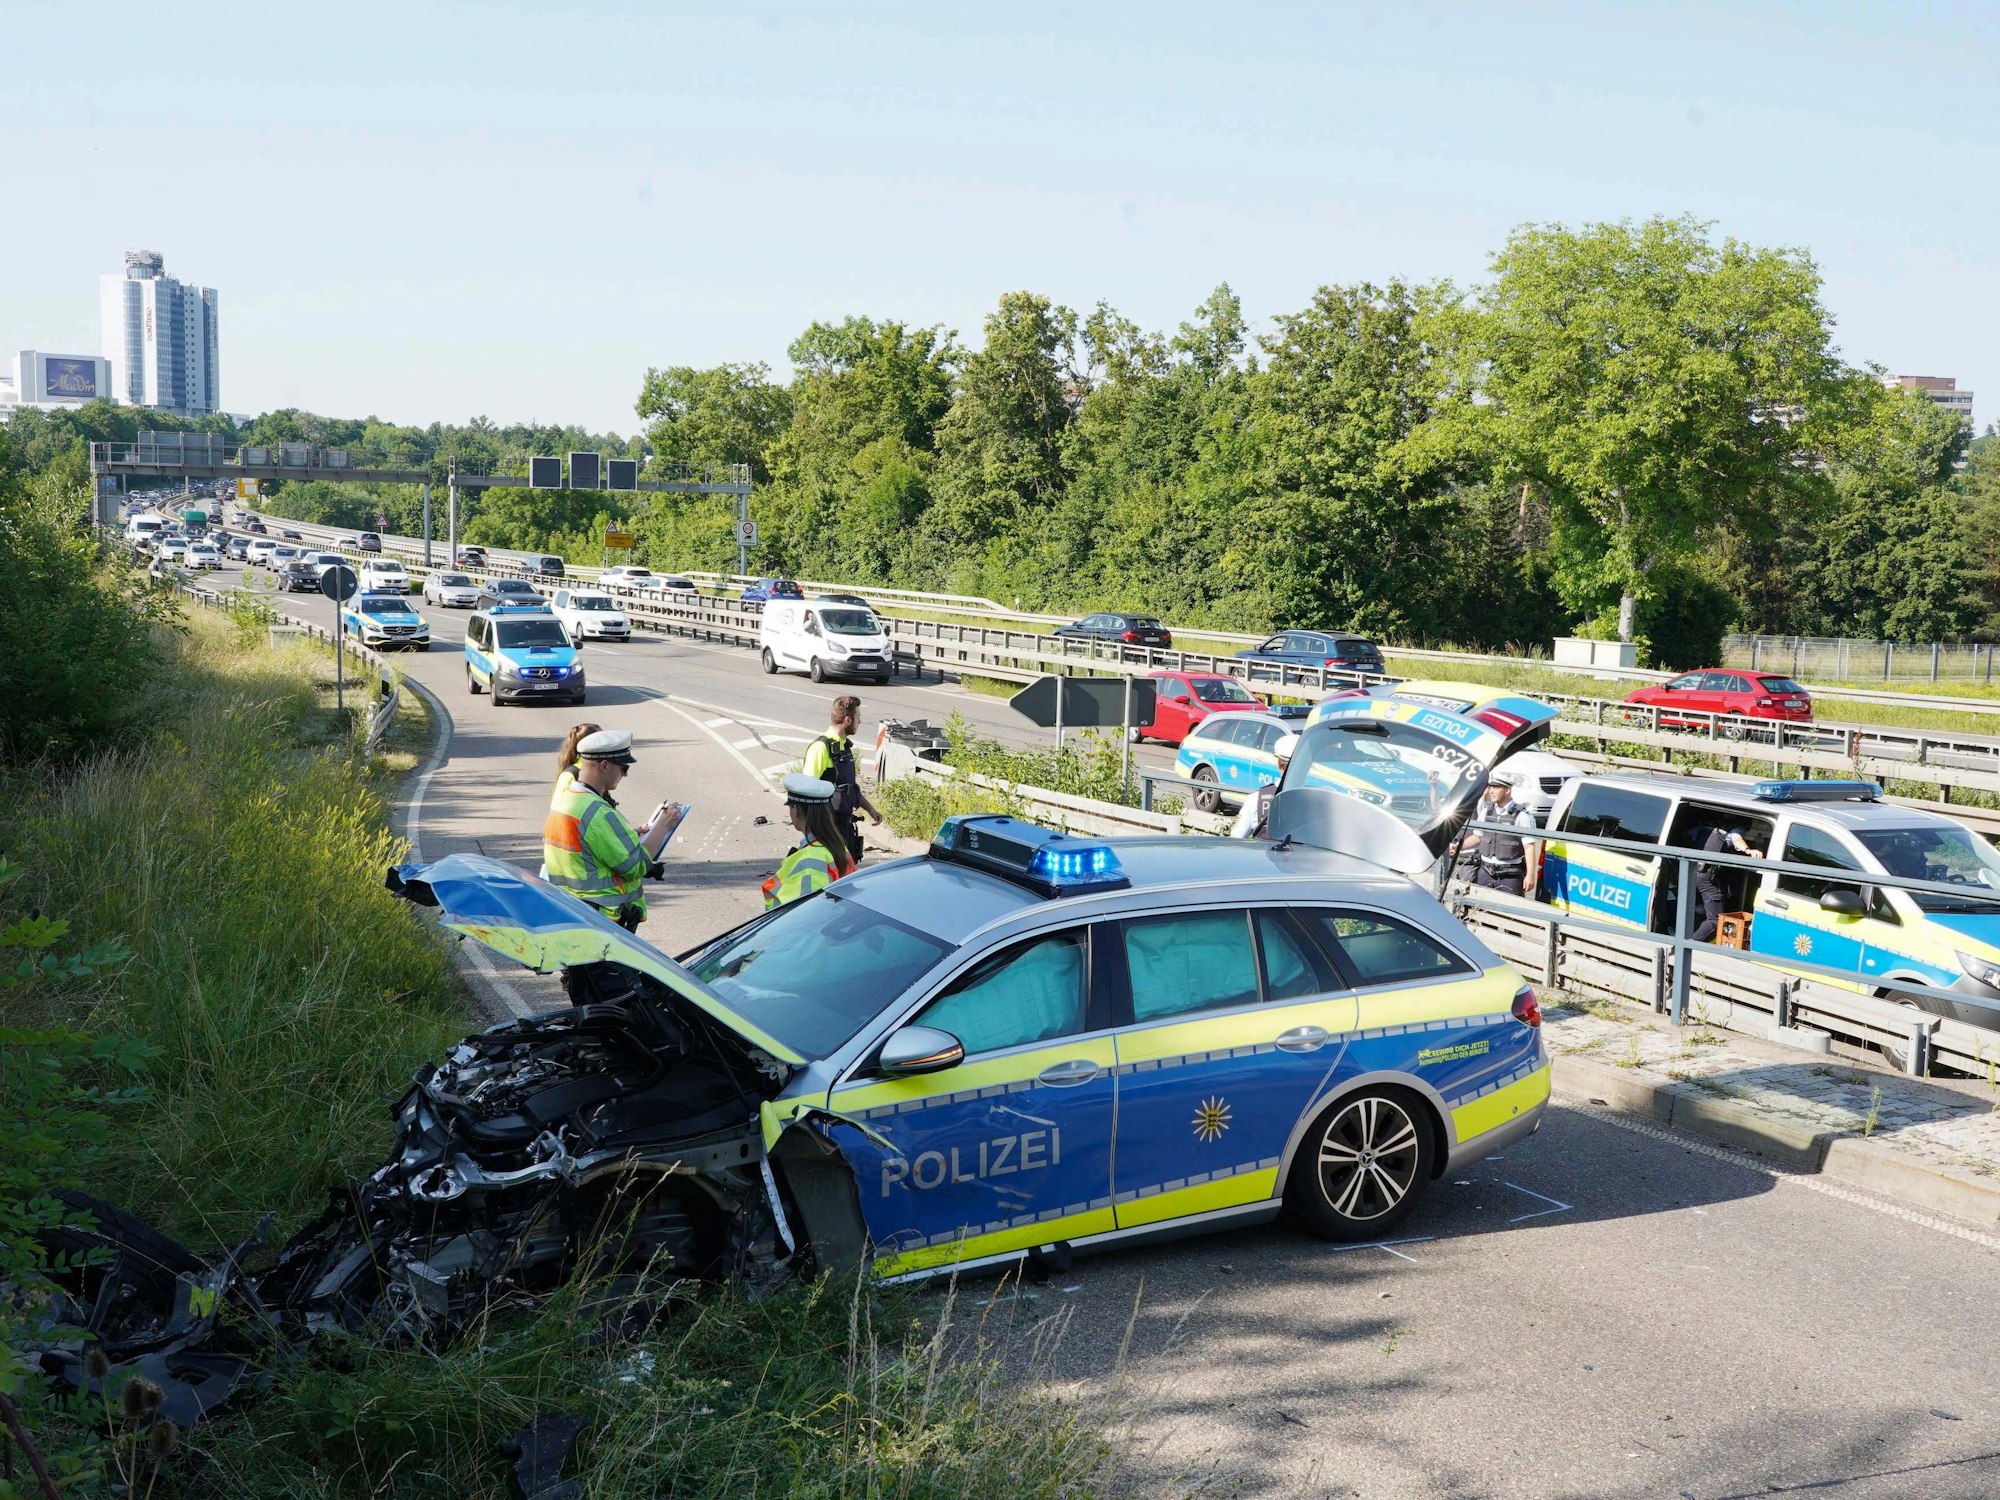 21.06.2022, Baden-Württemberg, Stuttgart: Ein kaputtes Polizeiauto steht nach einer Verfolgungsjagd in einer Ausfahrt. Bei dem Unfall sind drei Polizisten verletzt worden.